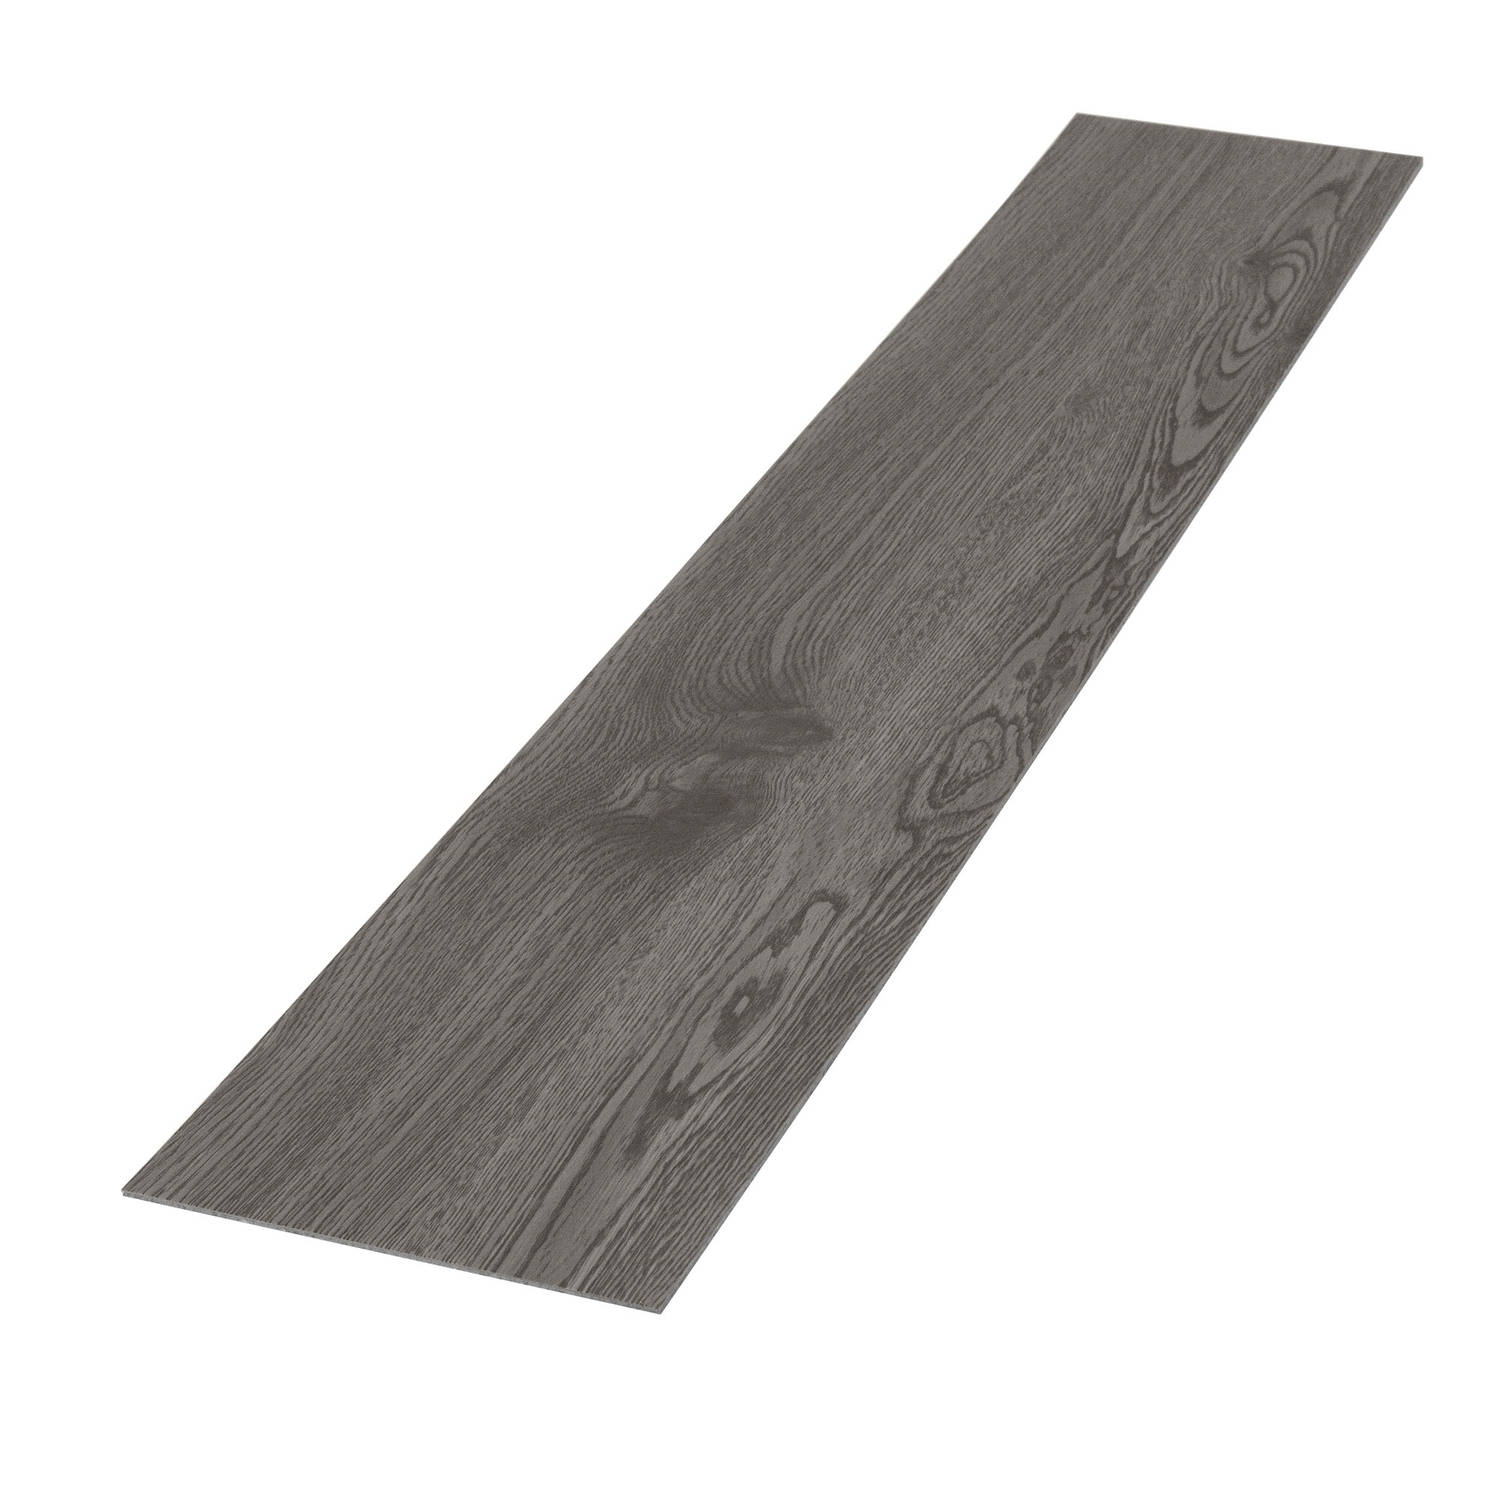 Deluxe PVC klevende vinylvloer voor 2,3 m² eik grijs 2 mm dik ML-Design